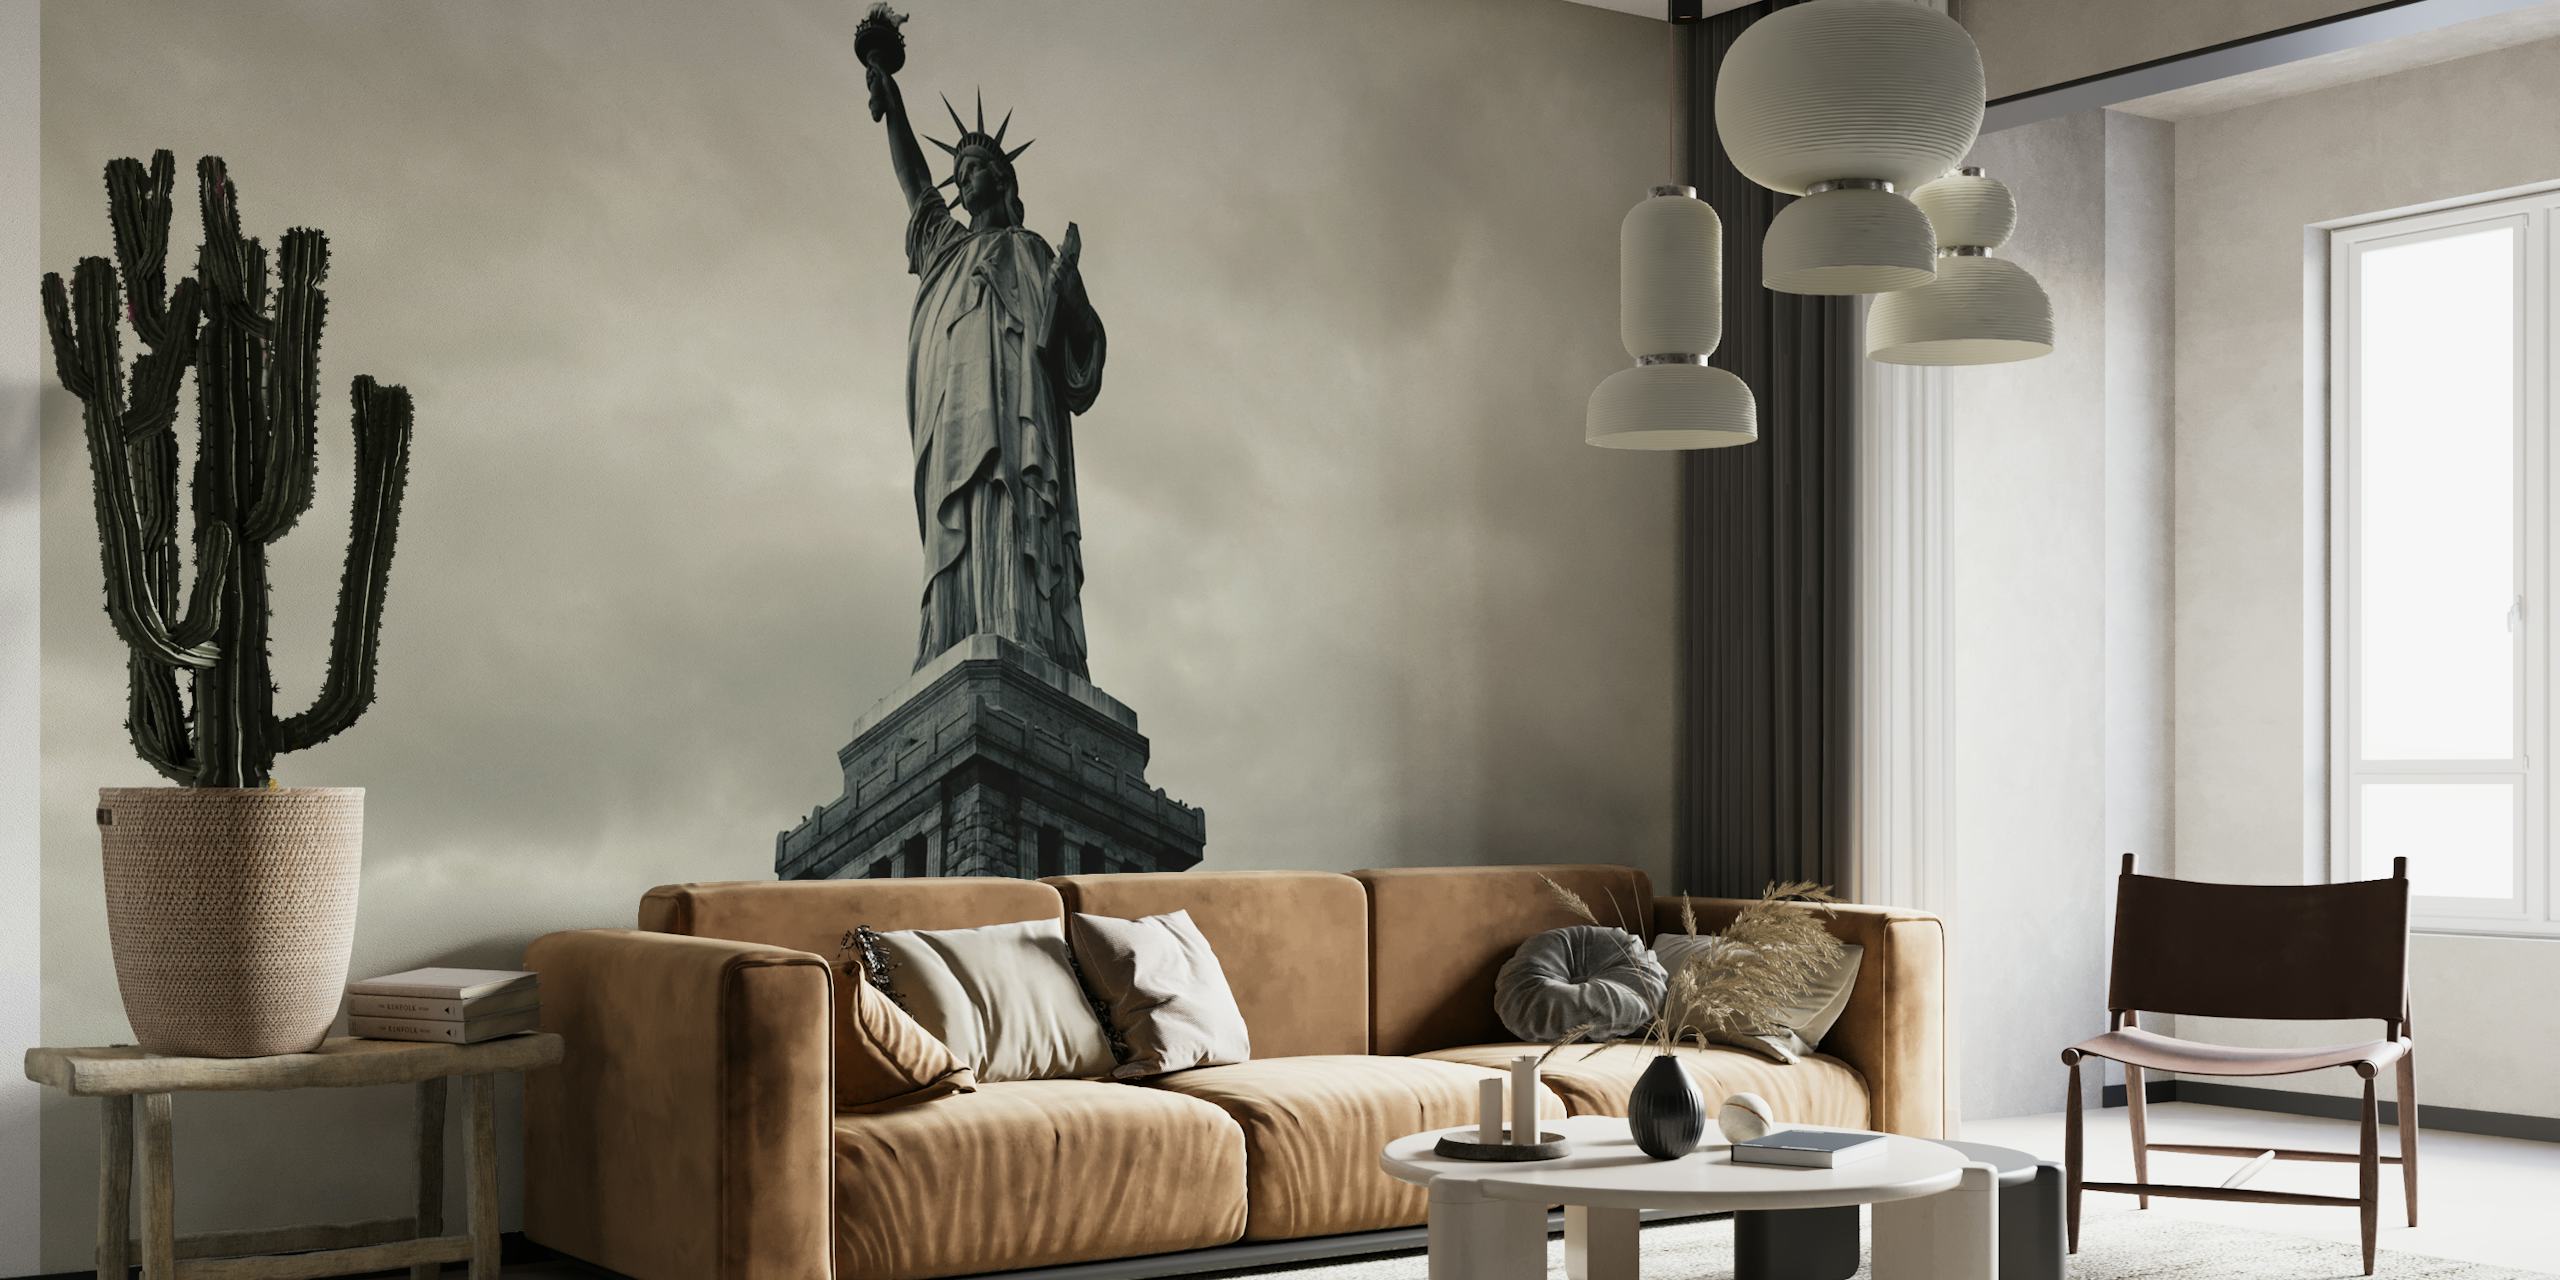 Sort/hvid vægmaleri af en ikonisk amerikansk statue, der symboliserer frihed og patriotisme